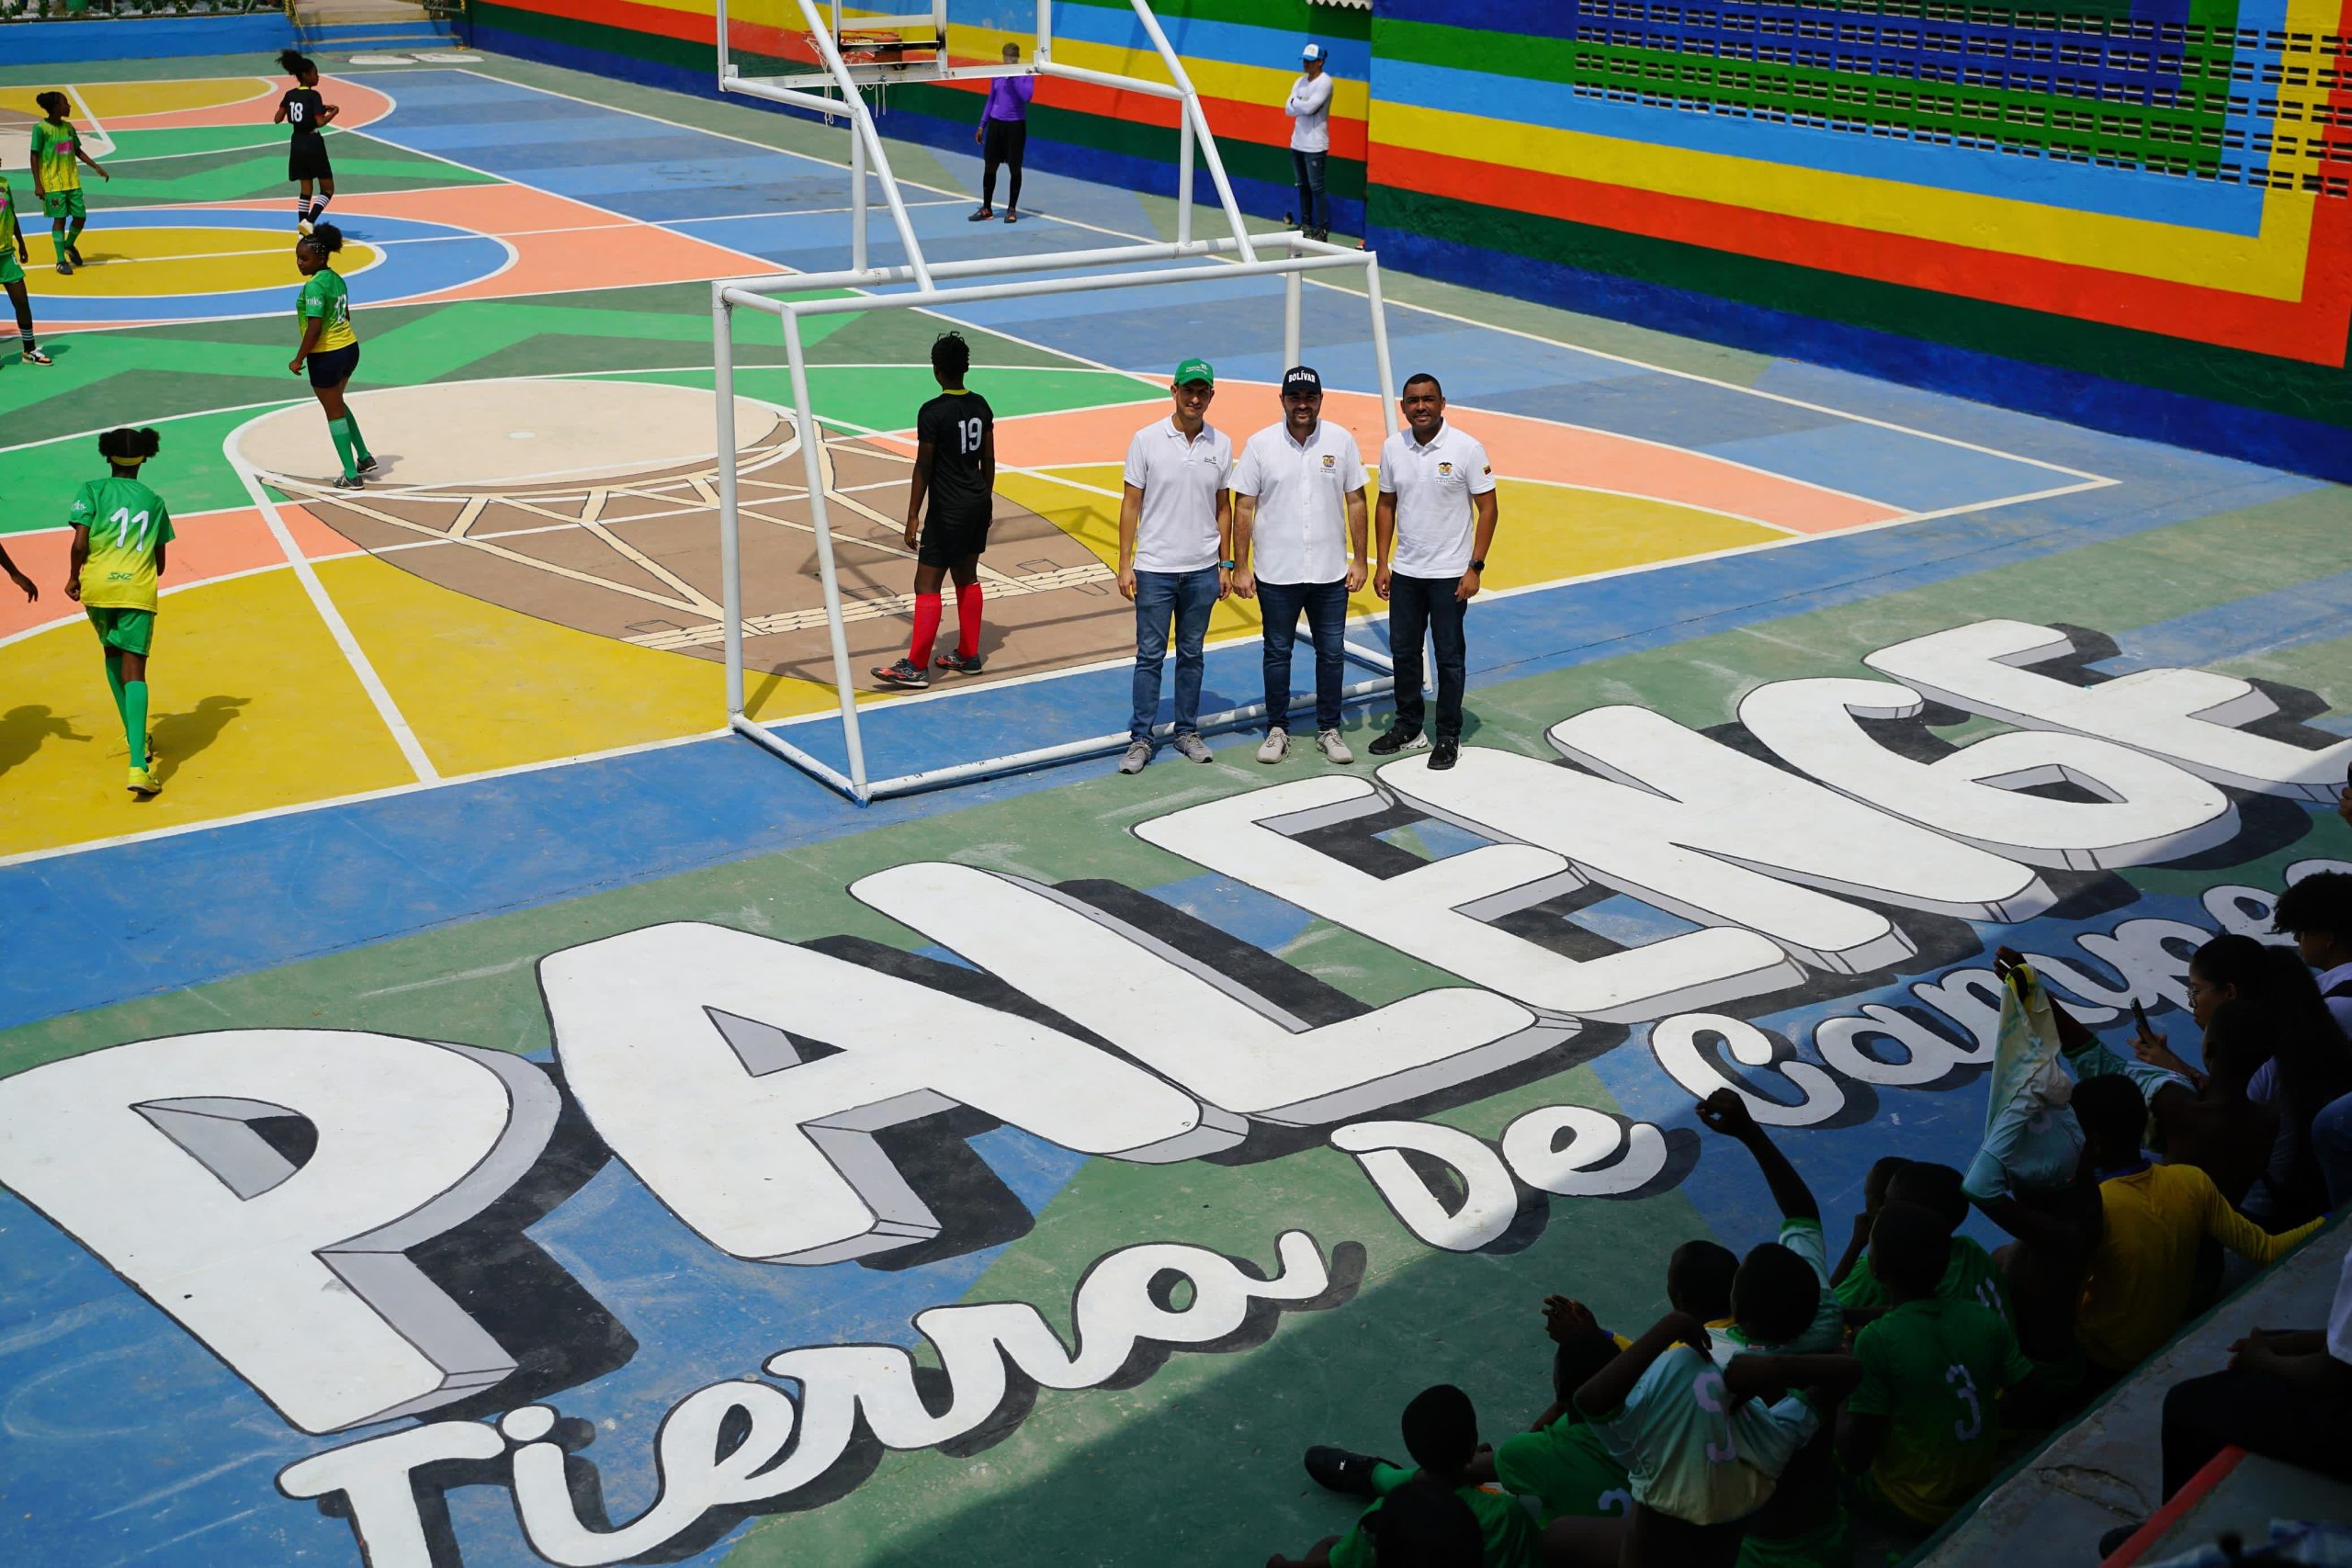 Nuevos espacios deportivos, +VIDA Palenque entrega la renovada cancha Pambelé